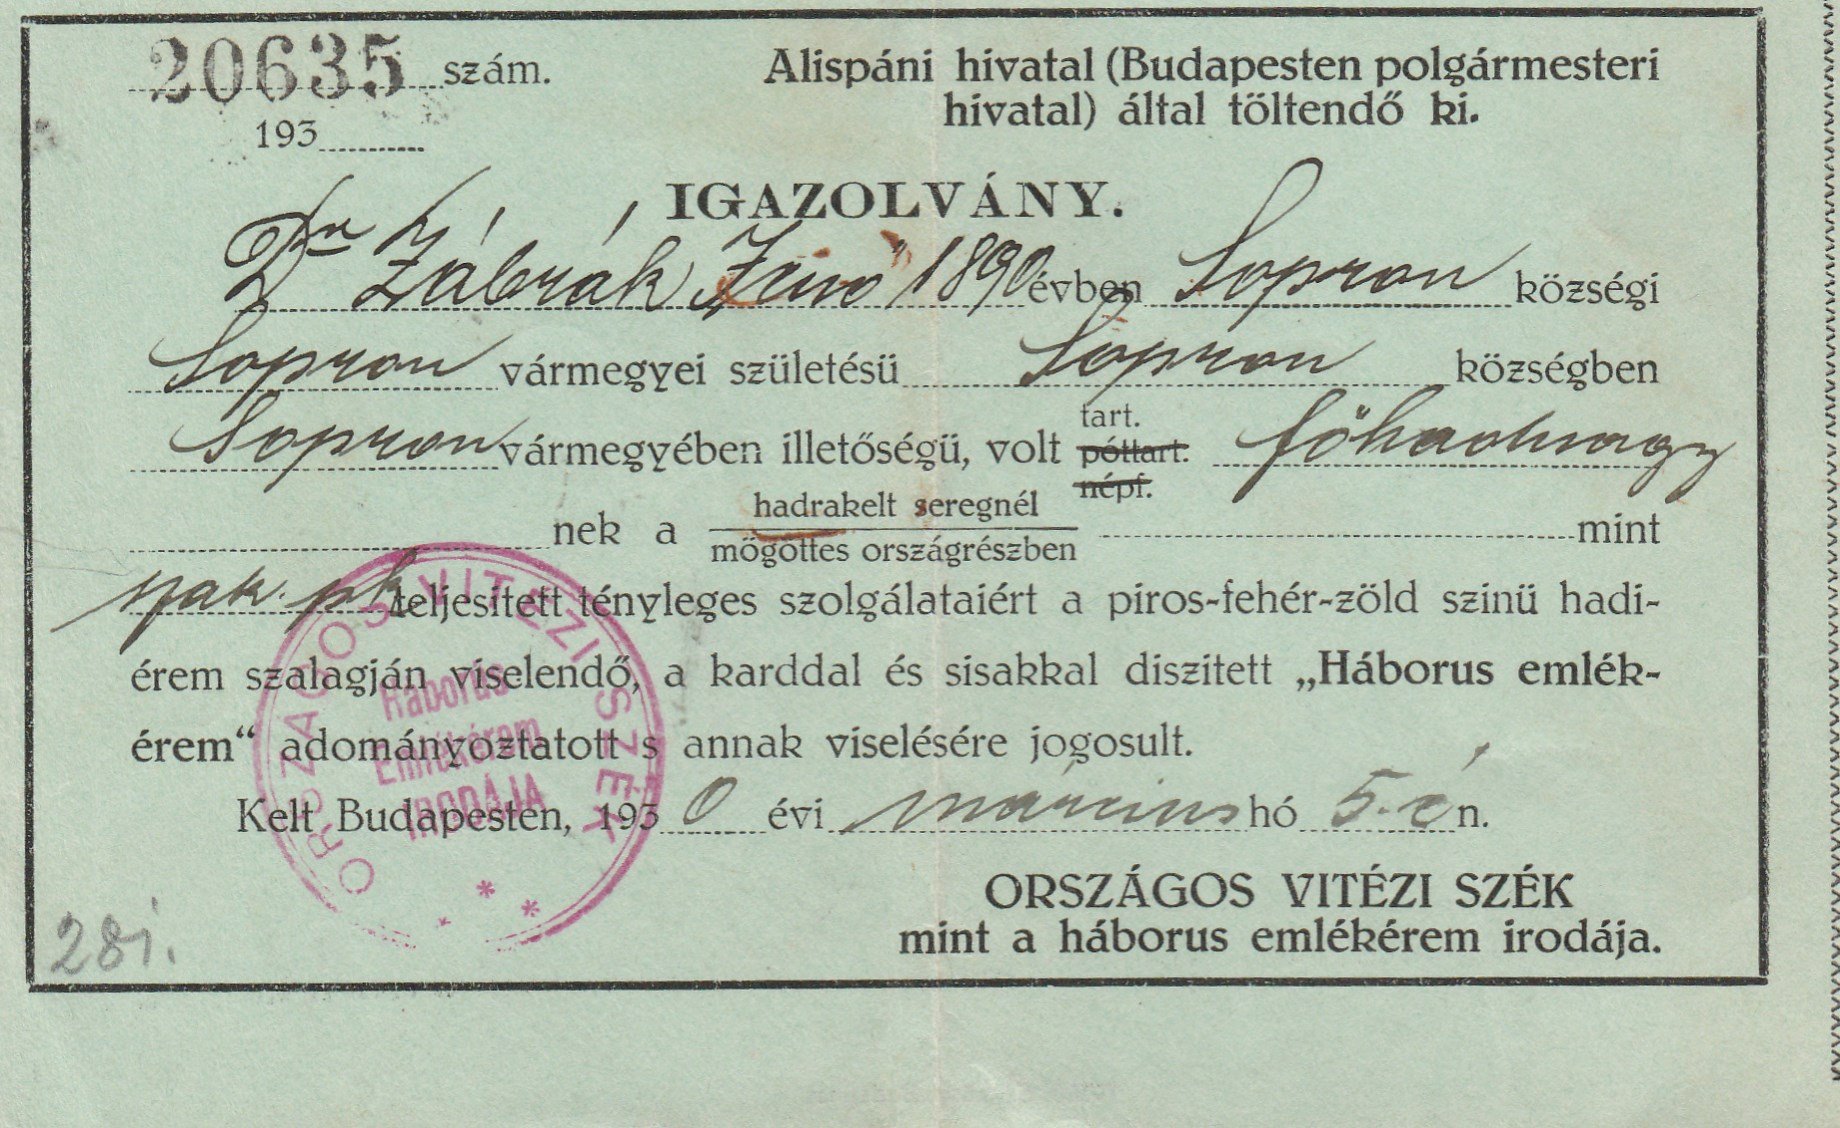 Dr. Zábrák Jenő igazolása a "Háborús emlékérem" viselésének jogosultságáról (Tapolcai Városi Múzeum CC BY-NC-SA)